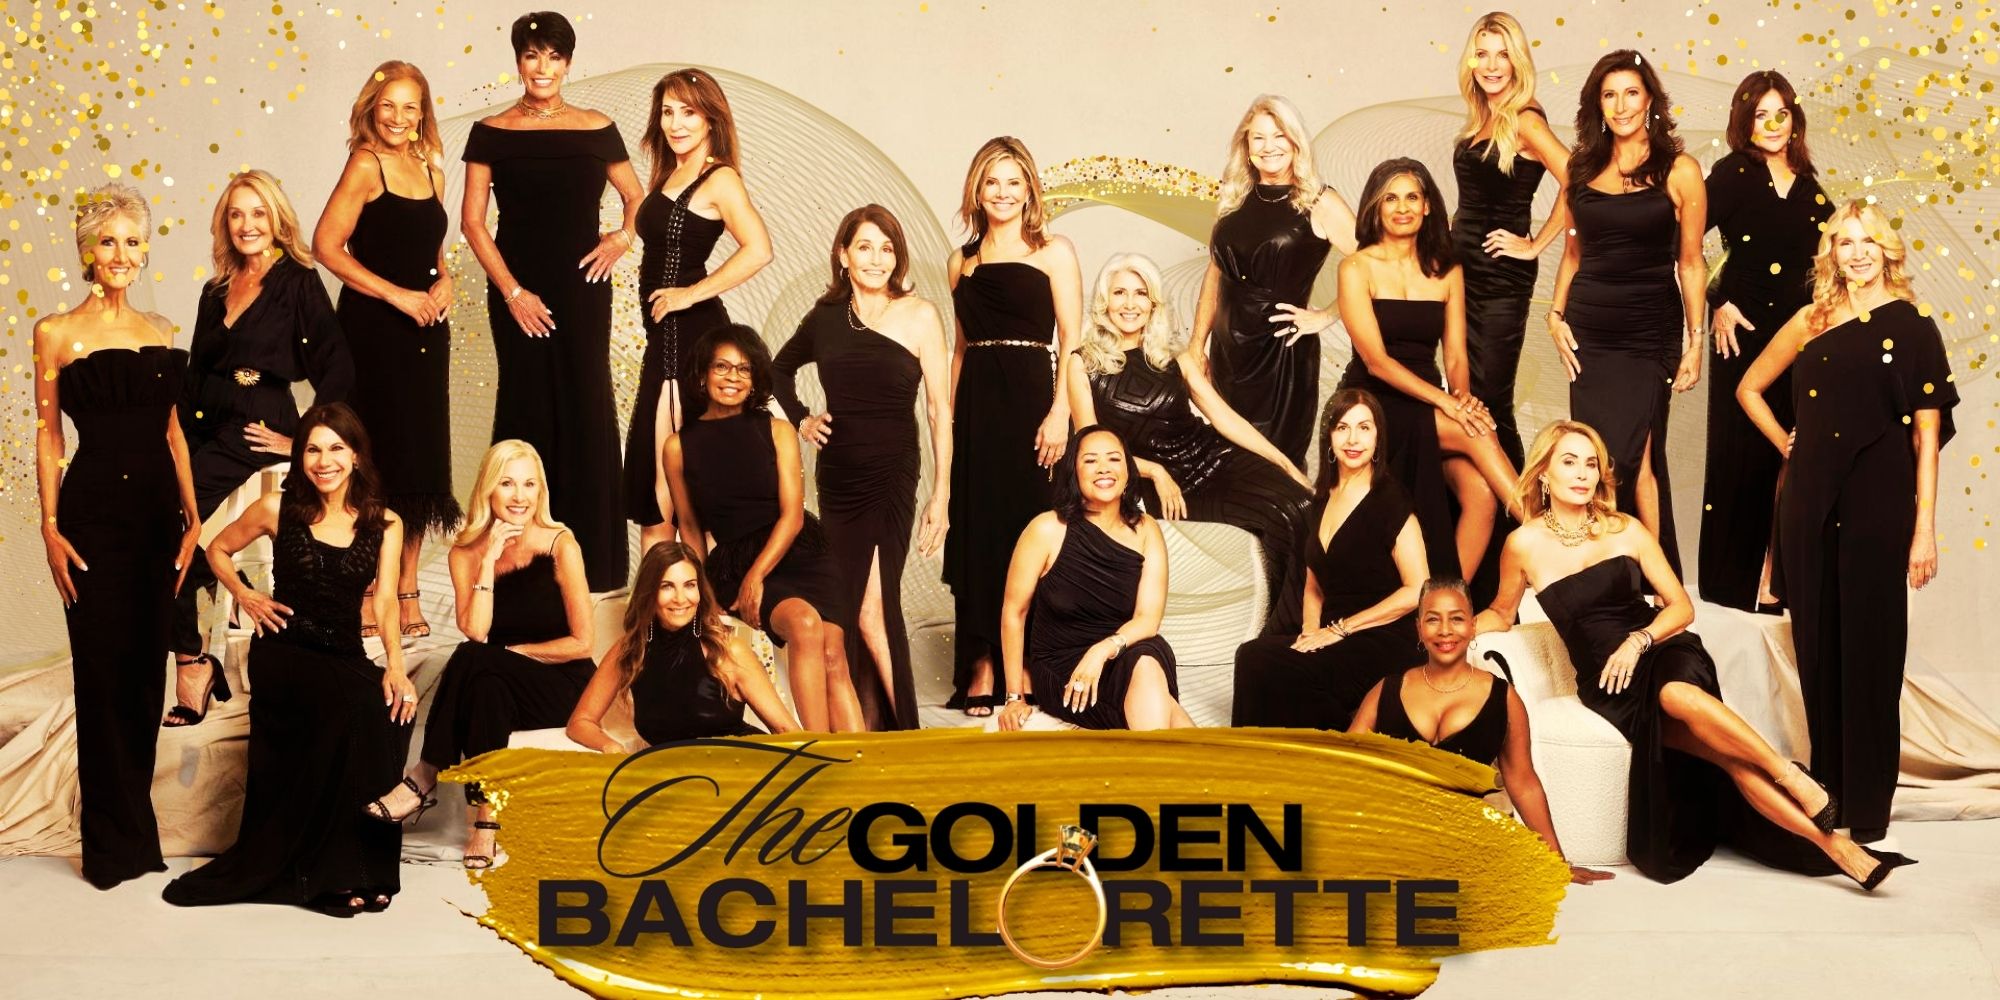 El productor de Golden Bachelor ofrece una actualización extremadamente decepcionante sobre el spin-off de Bachelorette